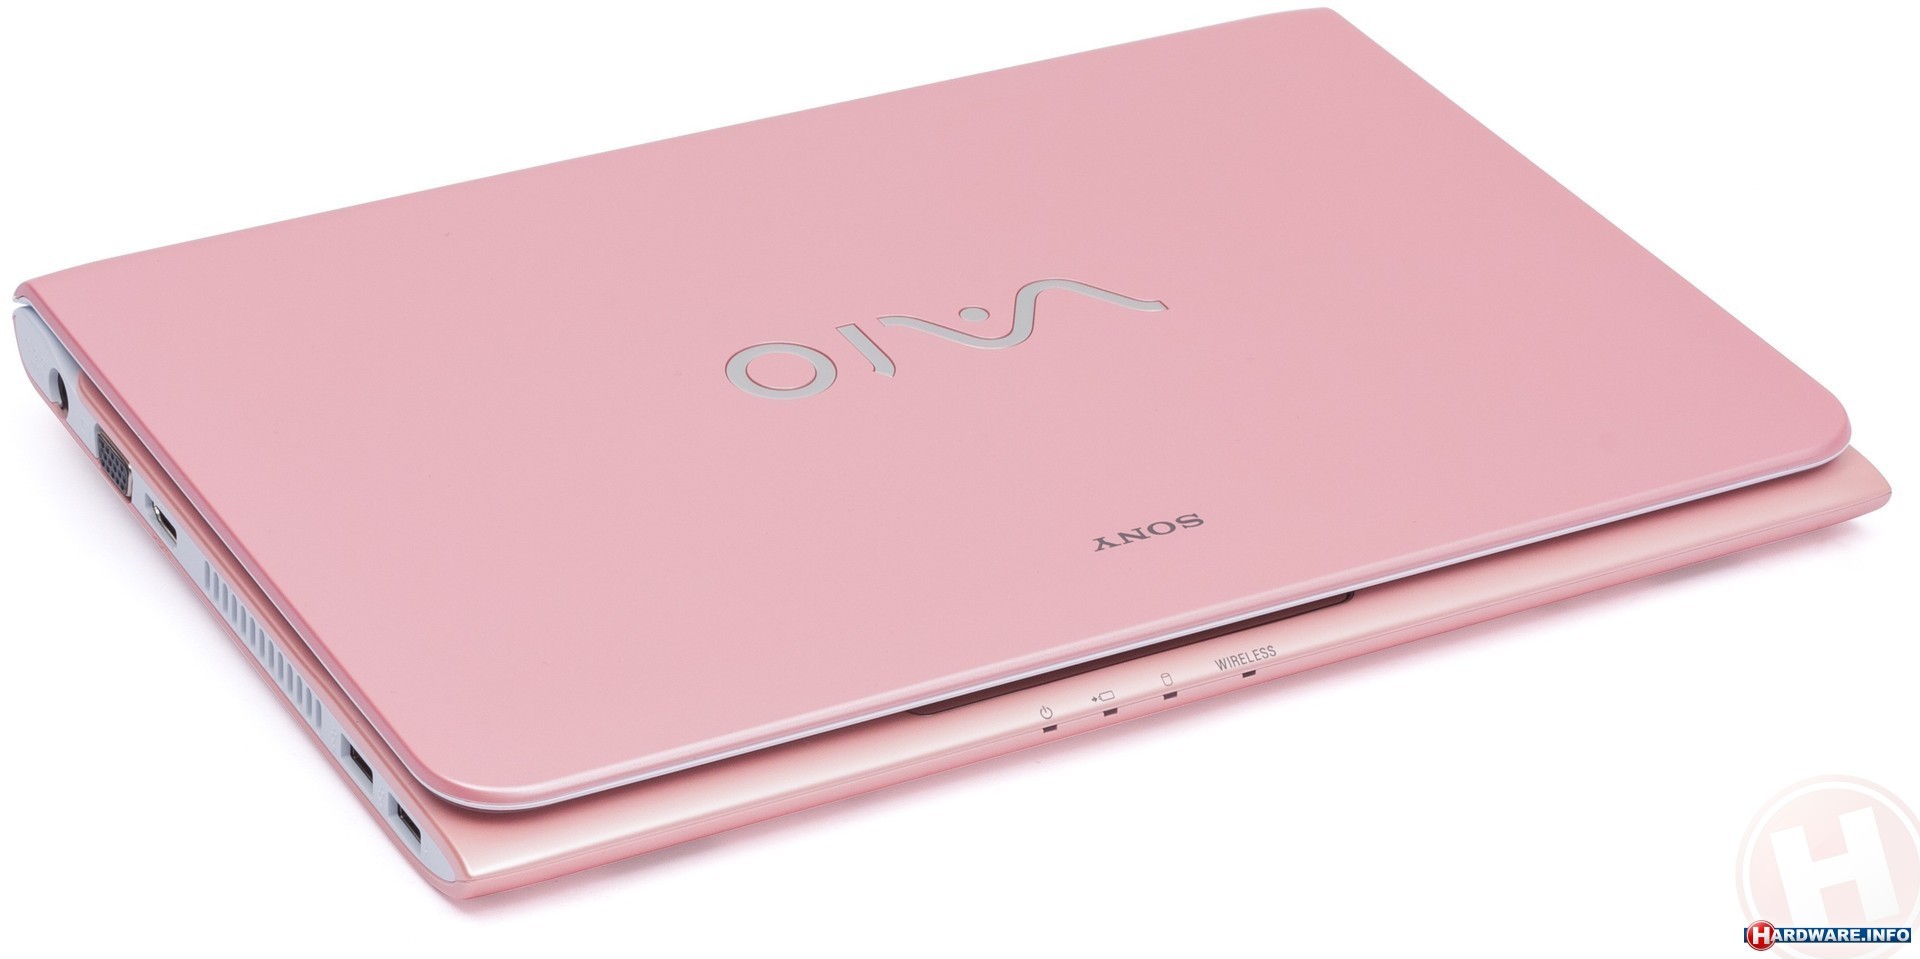 Розовый ноутбук купить. Розовый ноутбук ДНС. Сяоми н5095 ноутбук розовый. Ноутбук розовый самсунг. Ноутбук розовый самсунг маленький.